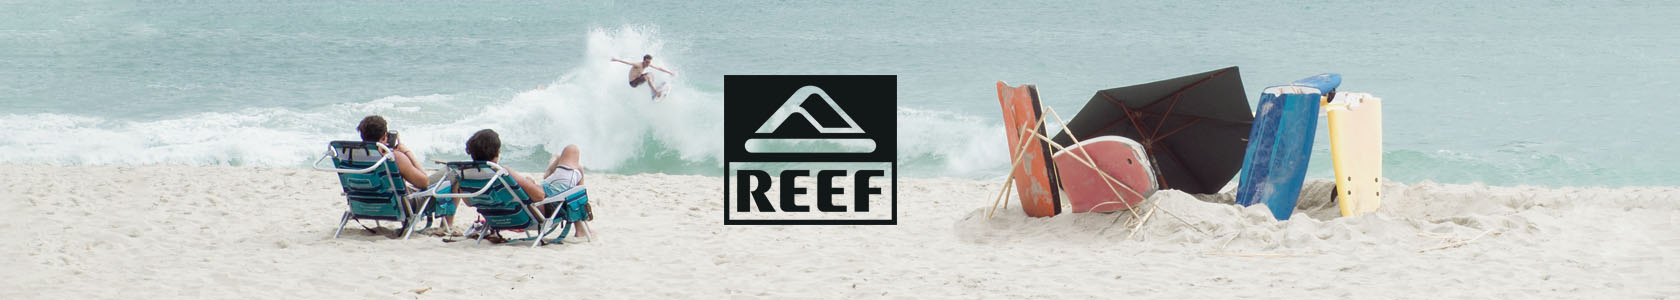 Surfer riding wave wearing Reef gear.